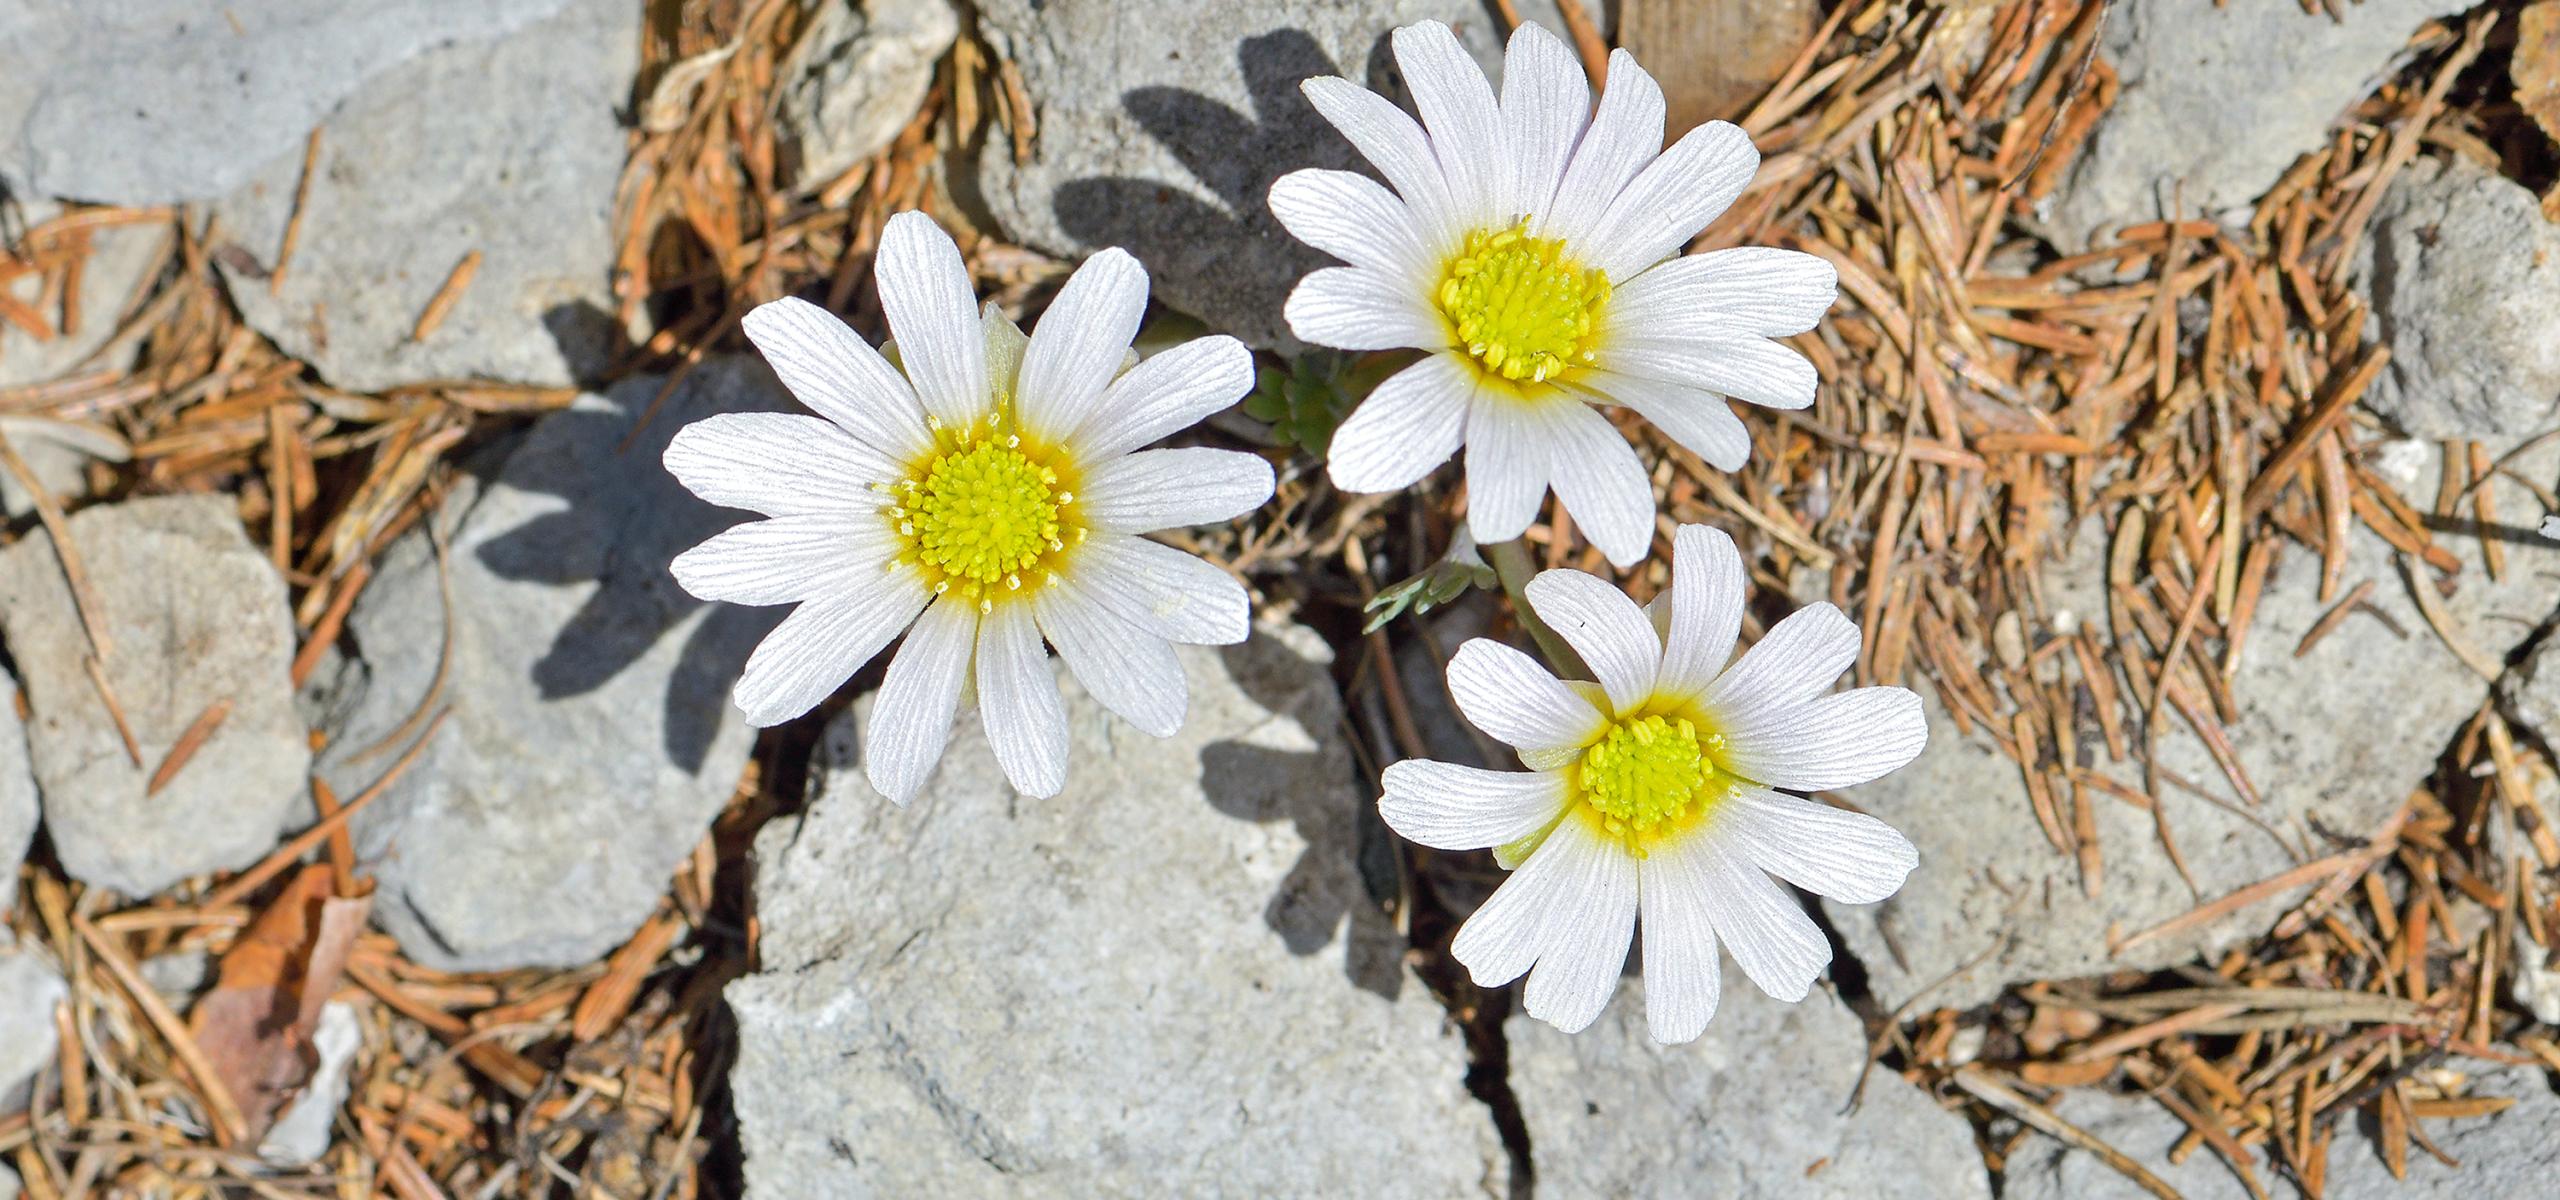 Zwischen Kalkgestein blühen drei zierliche weiße Anemonen Schmuckblumen mit gelben Blütenkorb